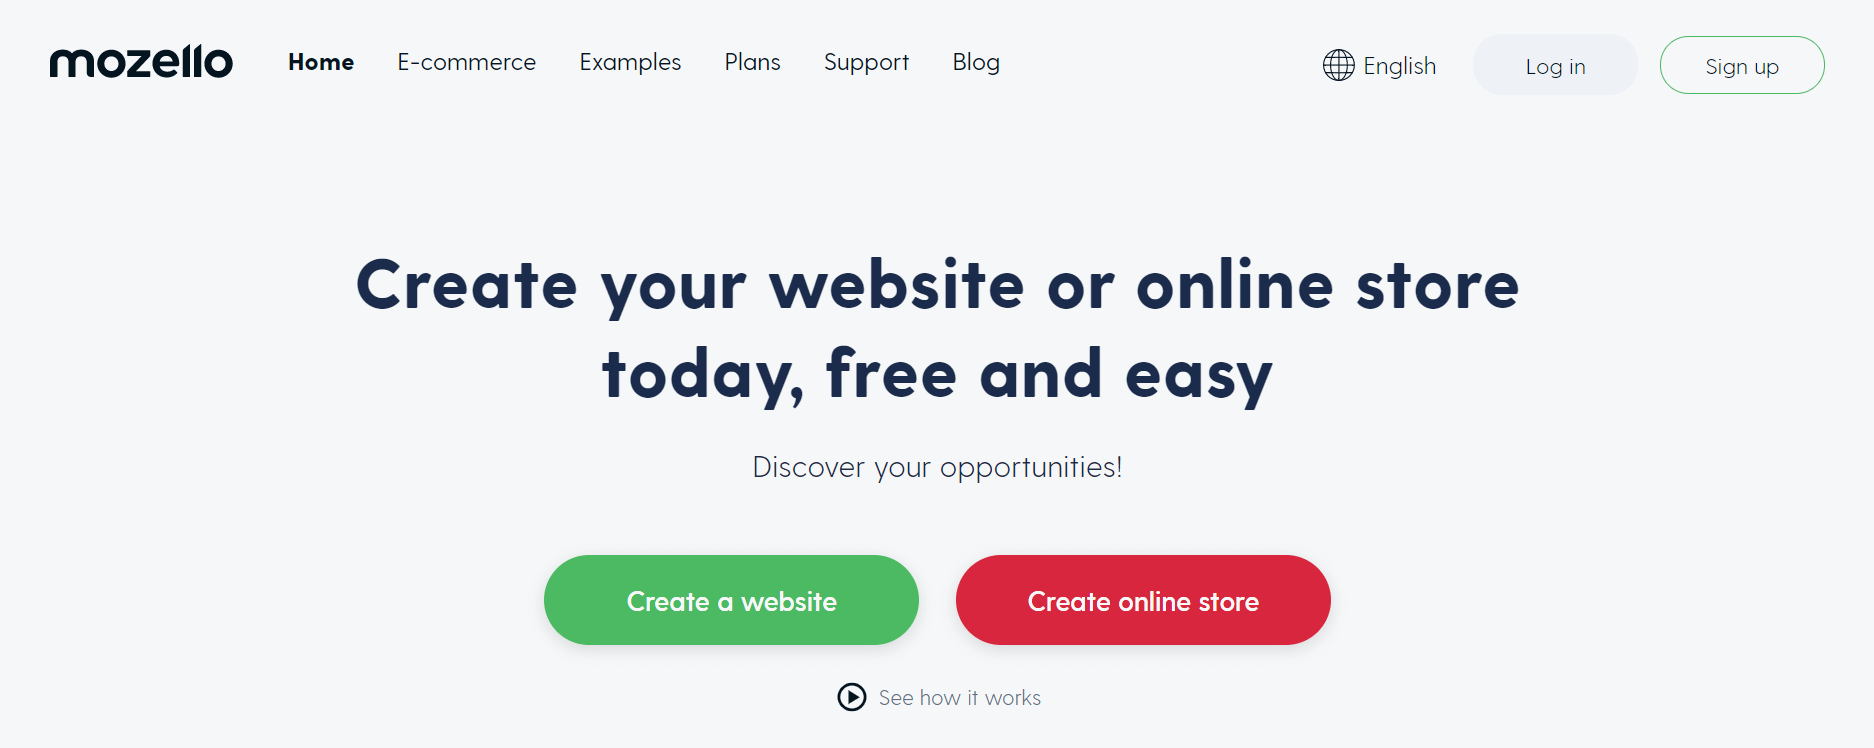 The Mozello home page.